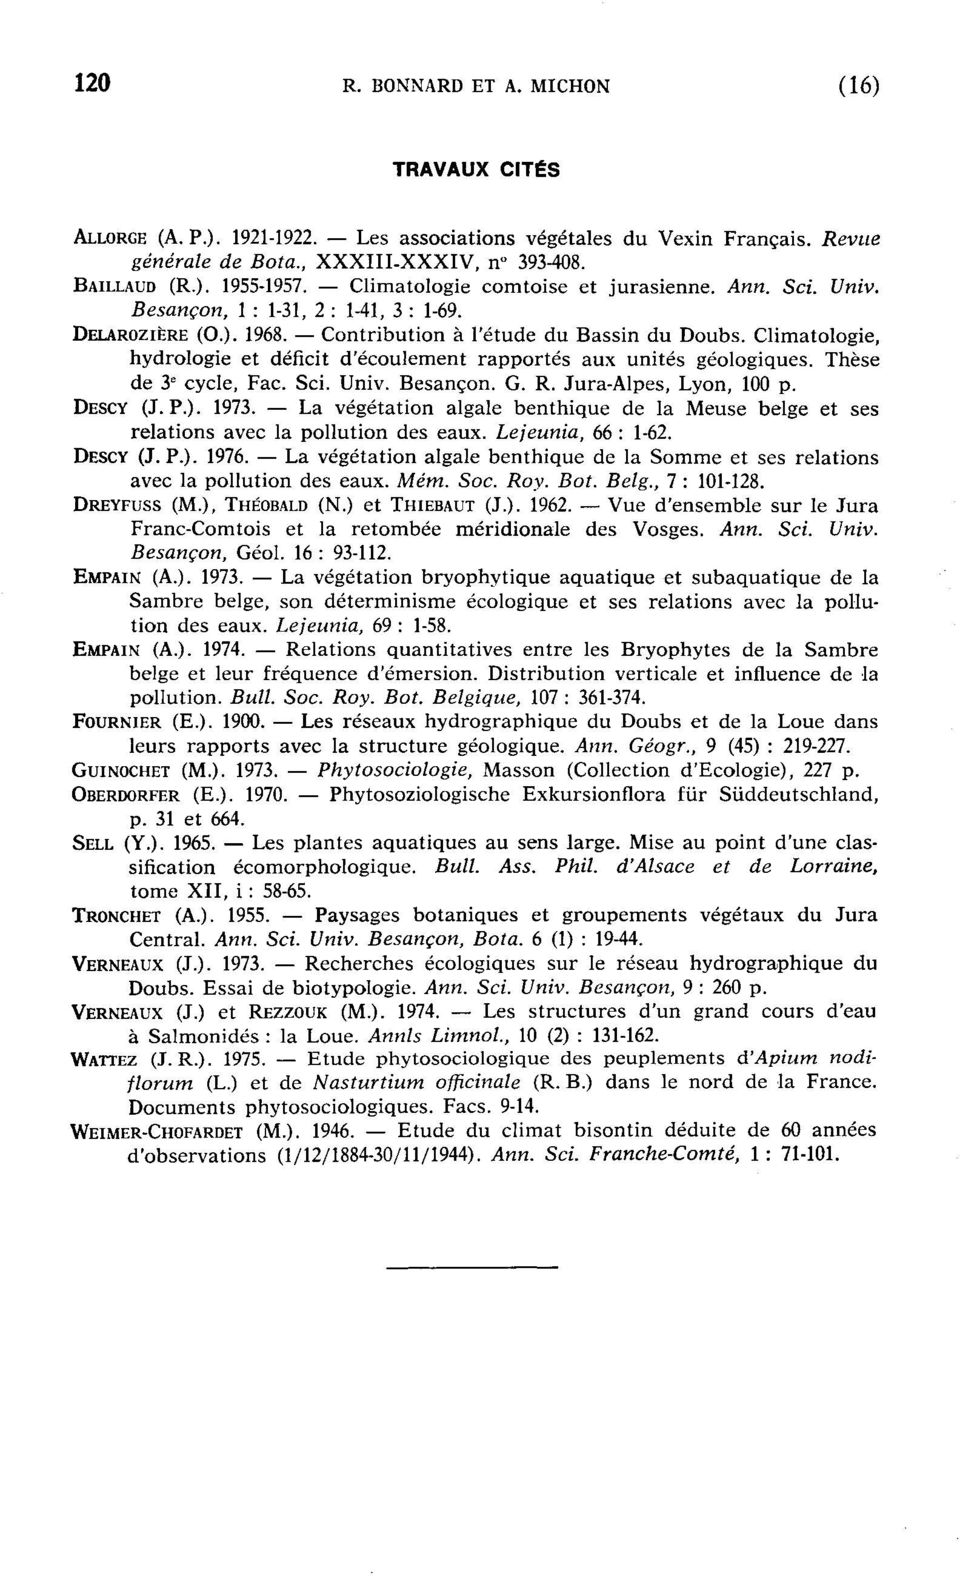 Climatlgie, hydrlgie et déficit d'éculement rapprtés aux unités gélgiques. Thèse de 3 e cycle, Fac. Sci. Univ. Besançn. G. R. Jura-Alpes, Lyn, 100 p. DESCY (J. P.). 1973.